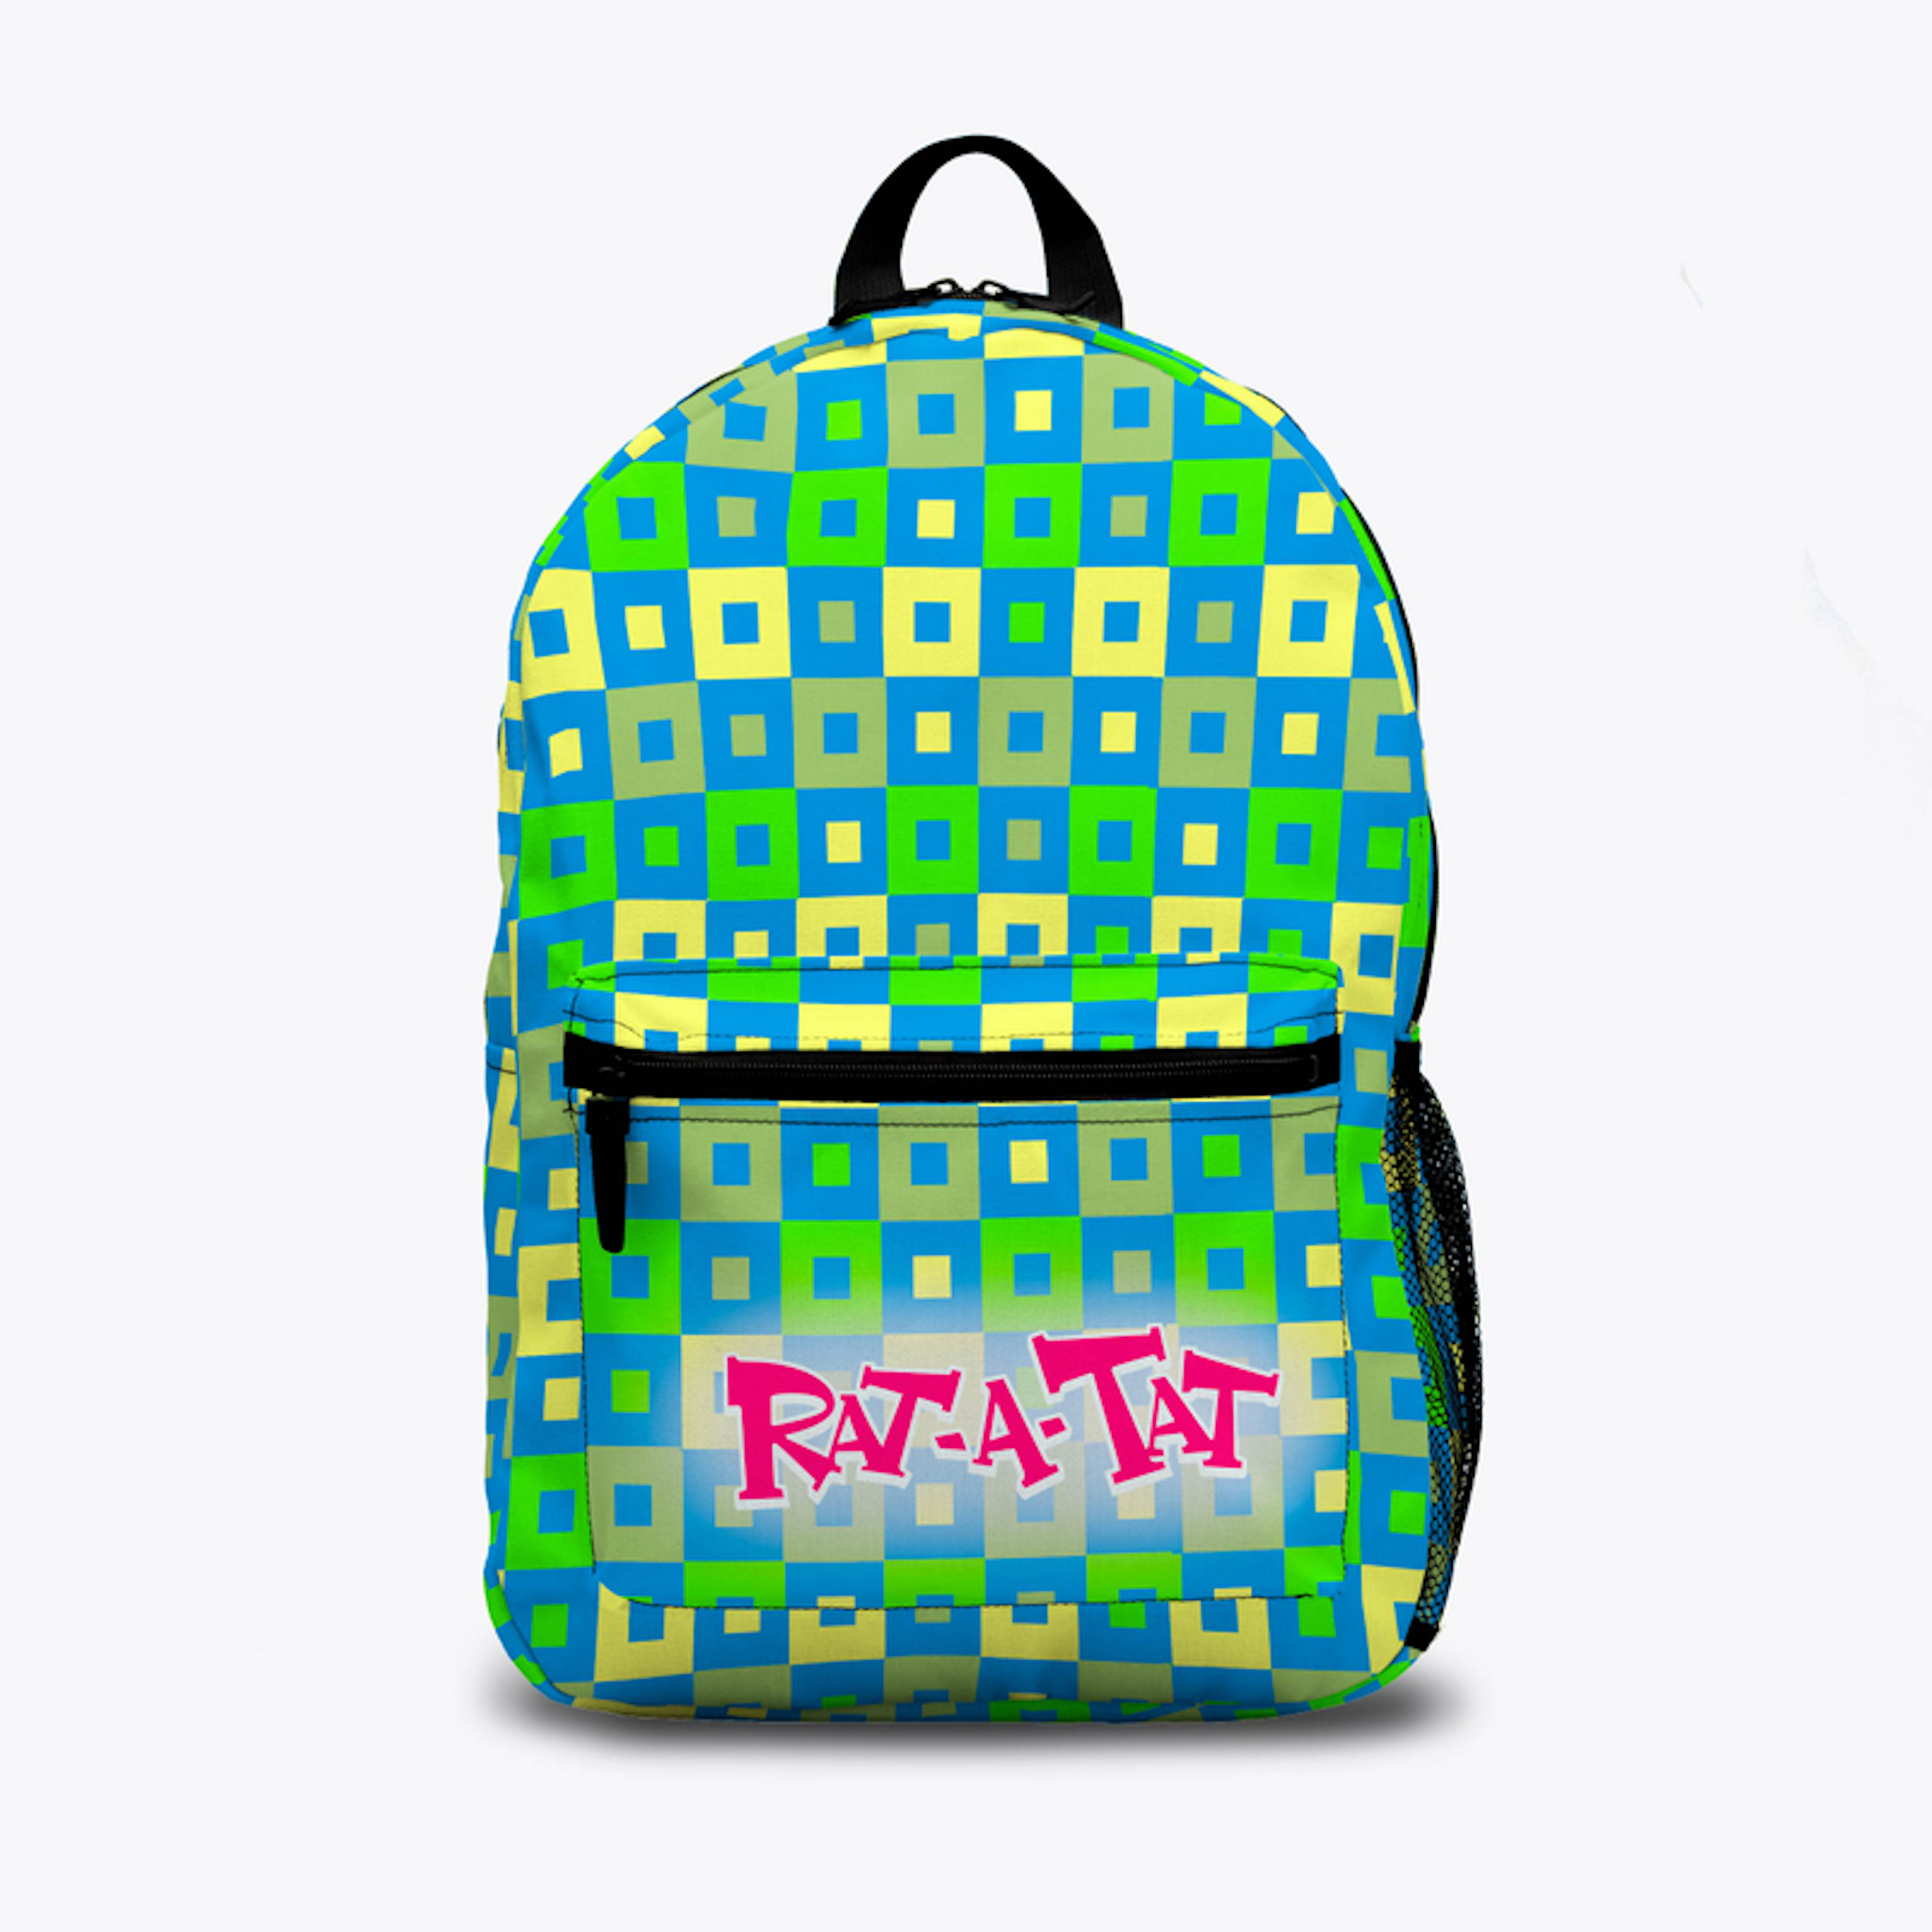 Rat- A- Tat Backpack